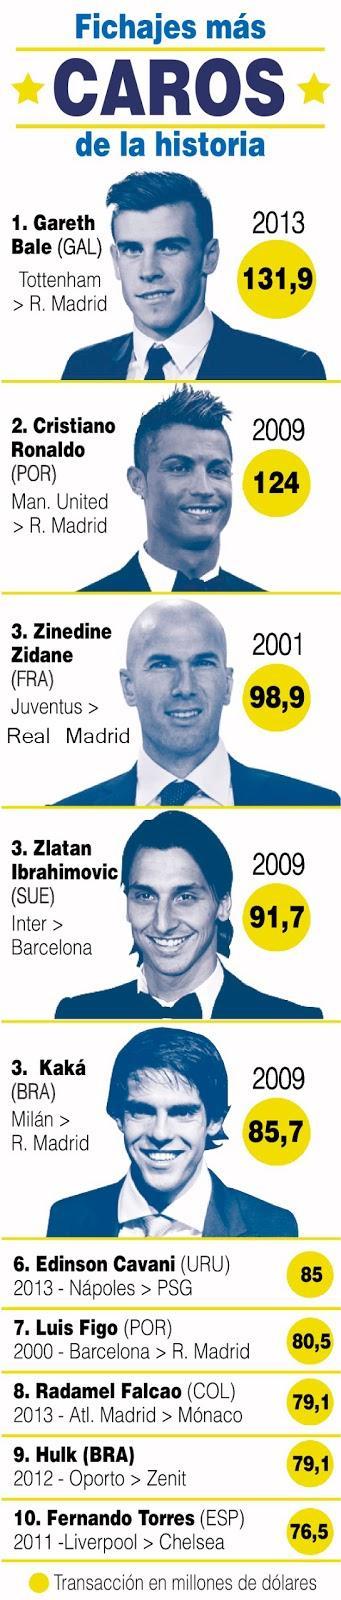 Top 10 jugadores de Fútbol mas caros de la historia #Infografia